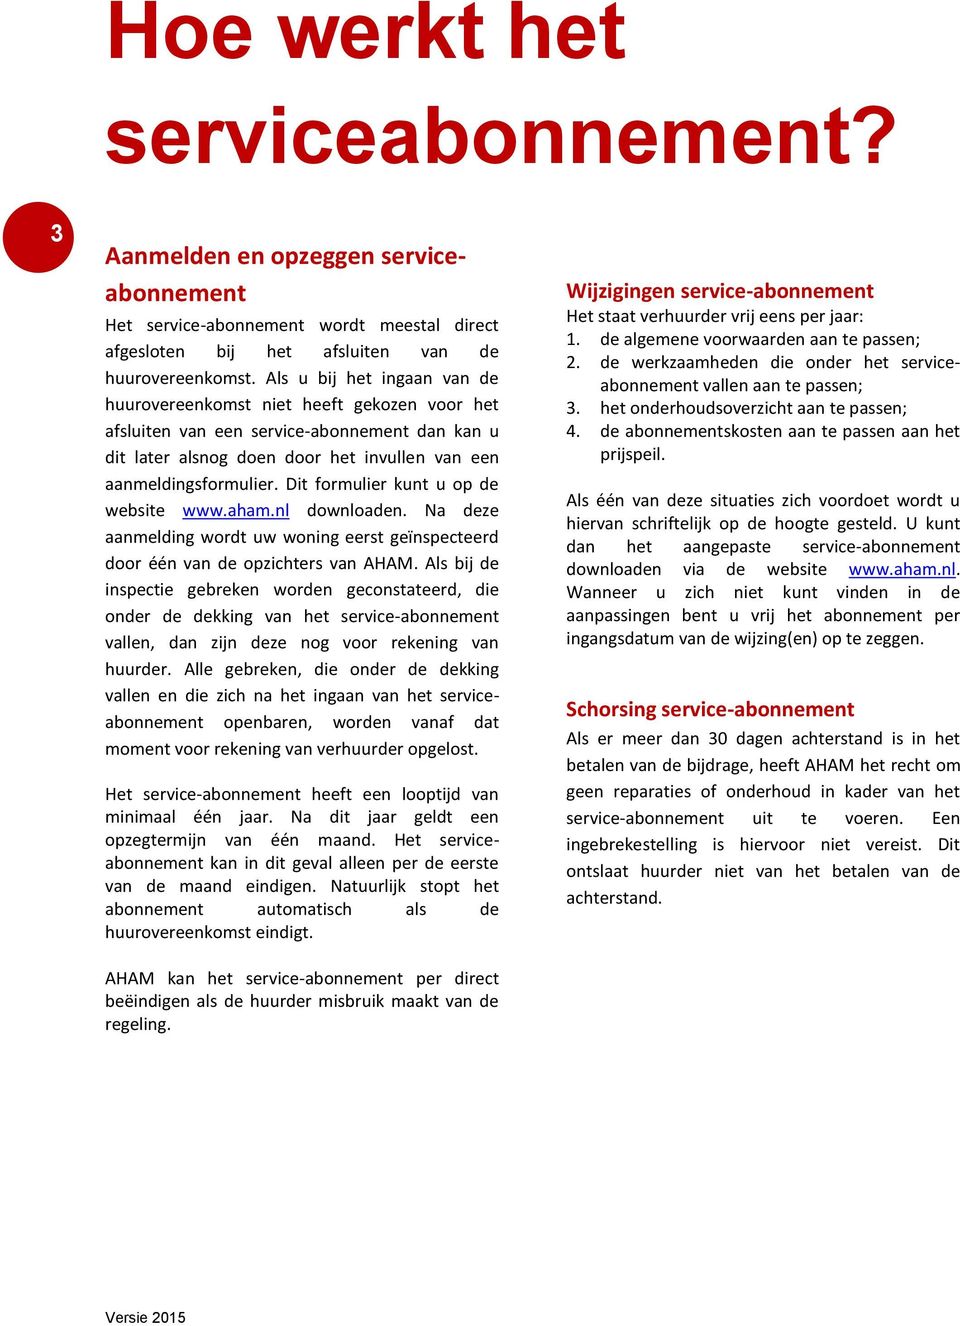 Dit formulier kunt u op de website www.aham.nl downloaden. Na deze aanmelding wordt uw woning eerst geïnspecteerd door één van de opzichters van AHAM.